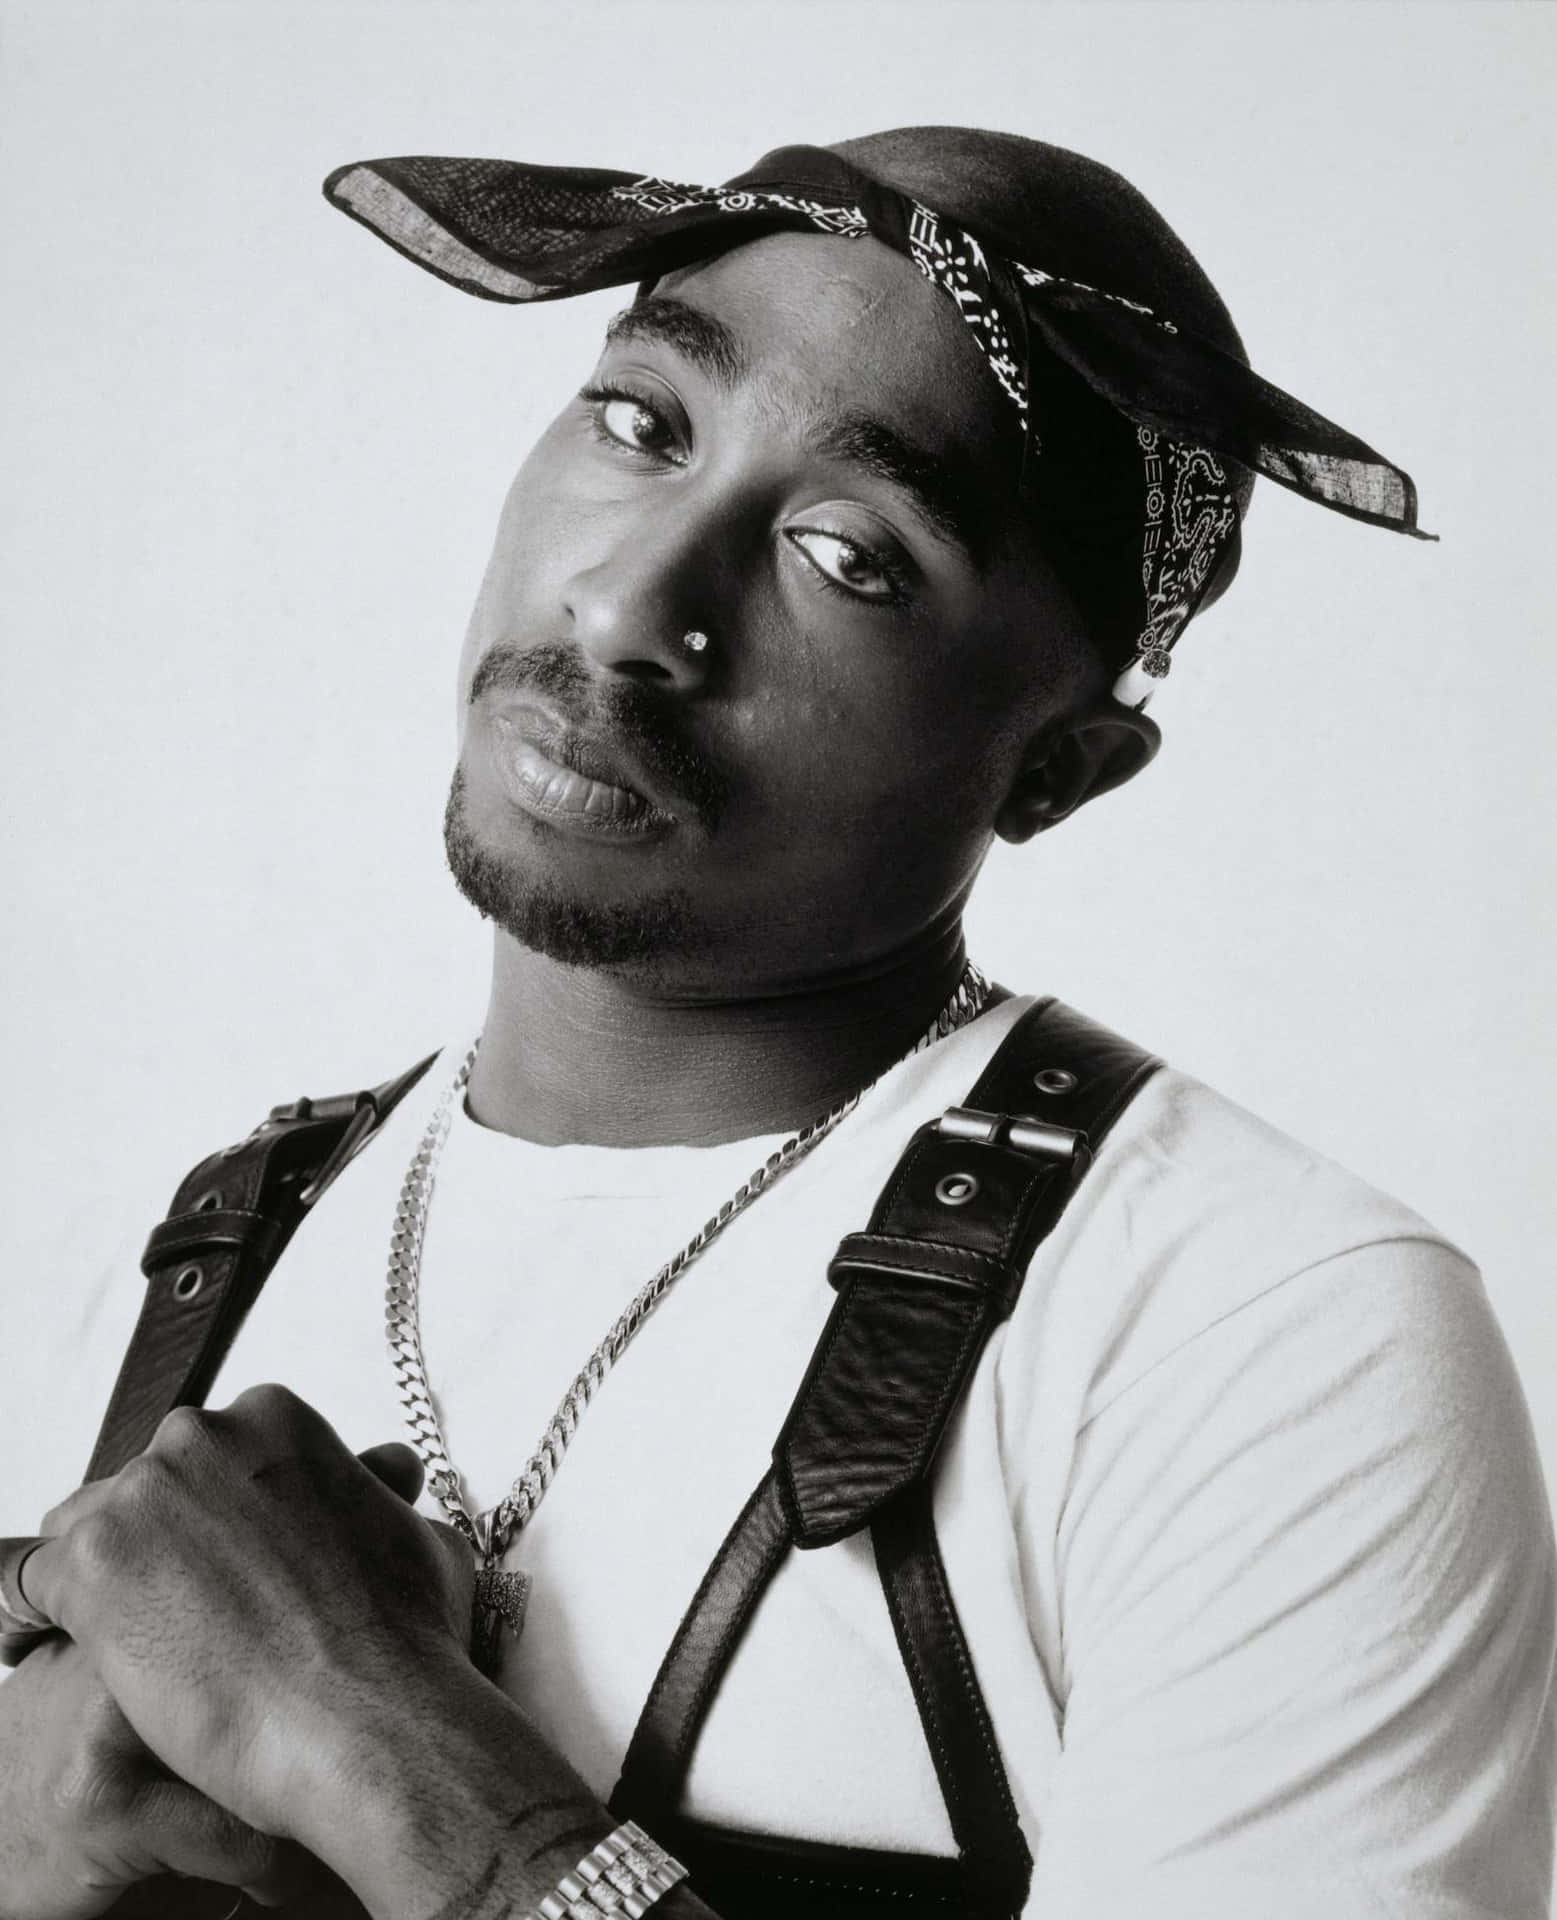 Oamado Lendário Rapper Tupac Shakur, Que Faleceu